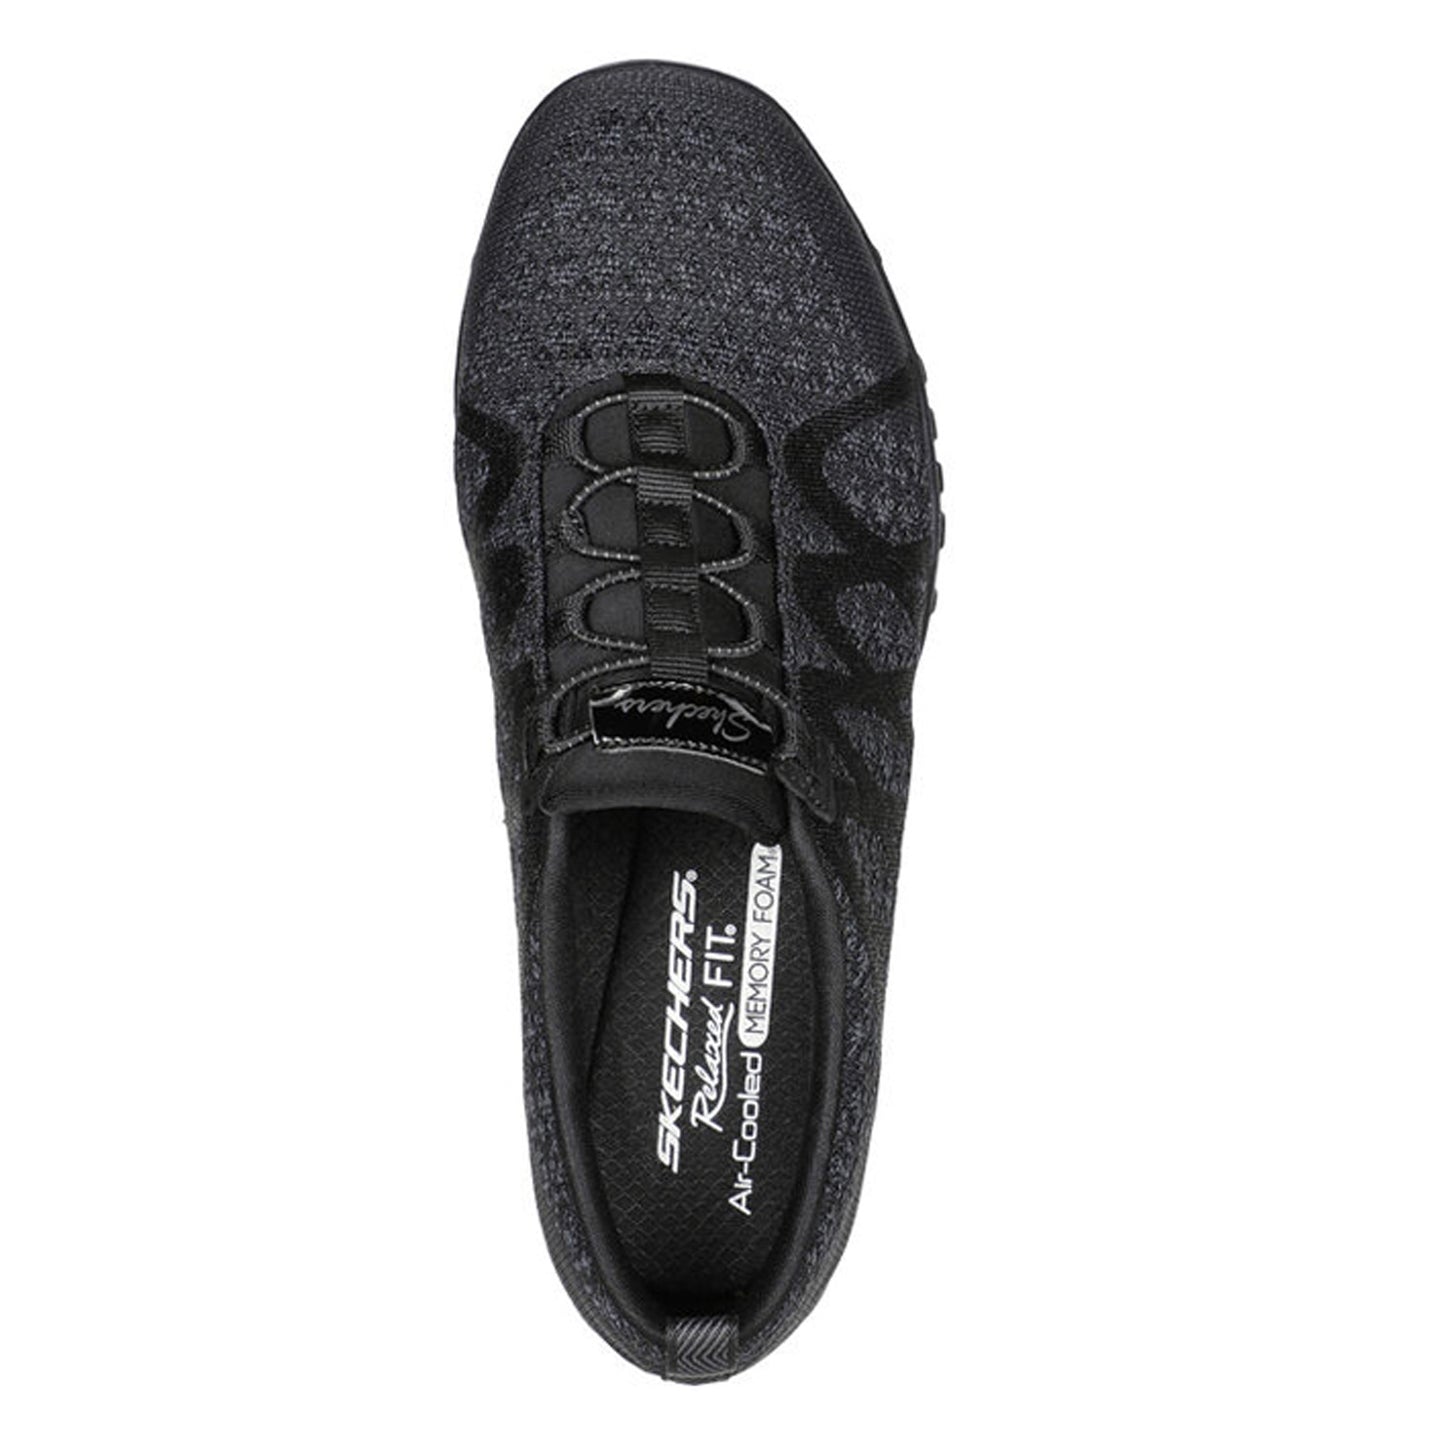 Peltz Shoes  Women's Skechers Relaxed Fit: Breathe-Easy - Infi-Knity Sneaker Black 100301-BLK